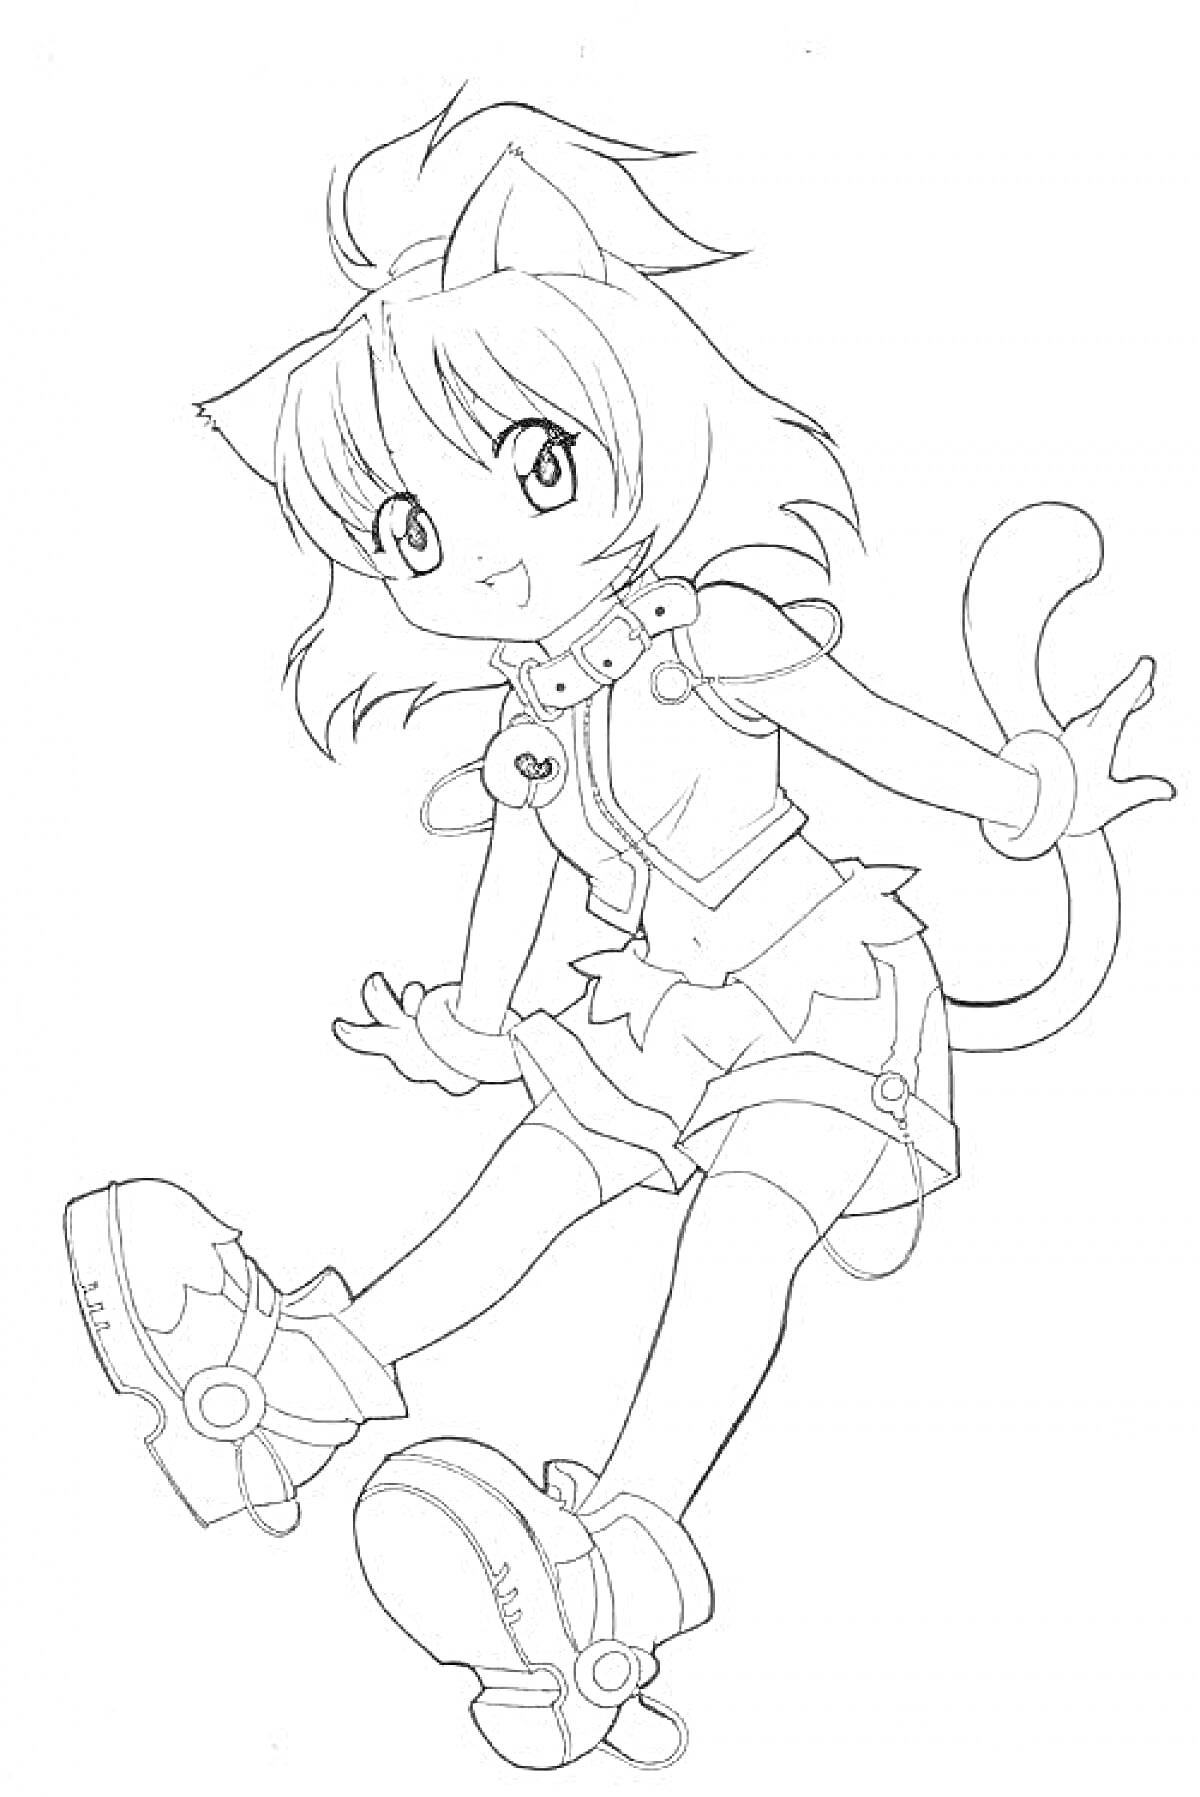 Девочка в аниме стиле с кошачьими ушками и хвостом, в короткой юбке и ботинках